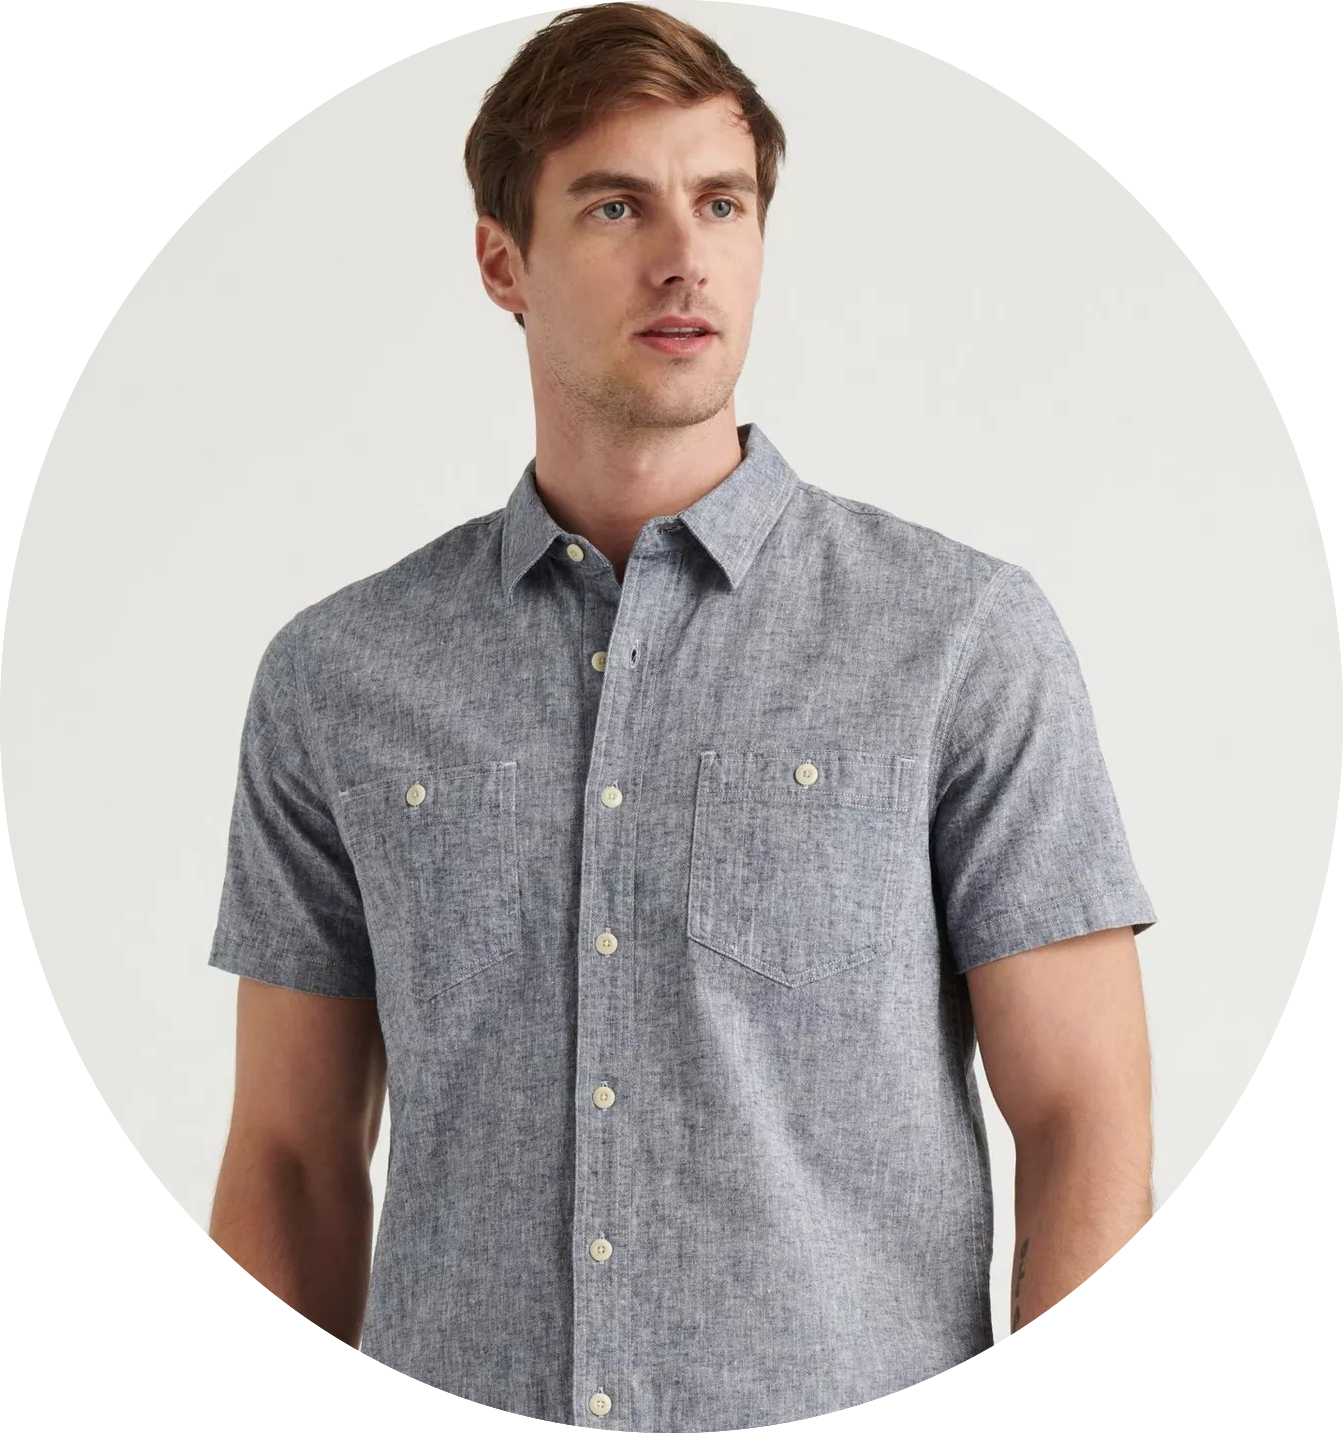 Lucky Brand: Men's Linen Short-Sleeve Jaybird Shirt $15 + Free S/H